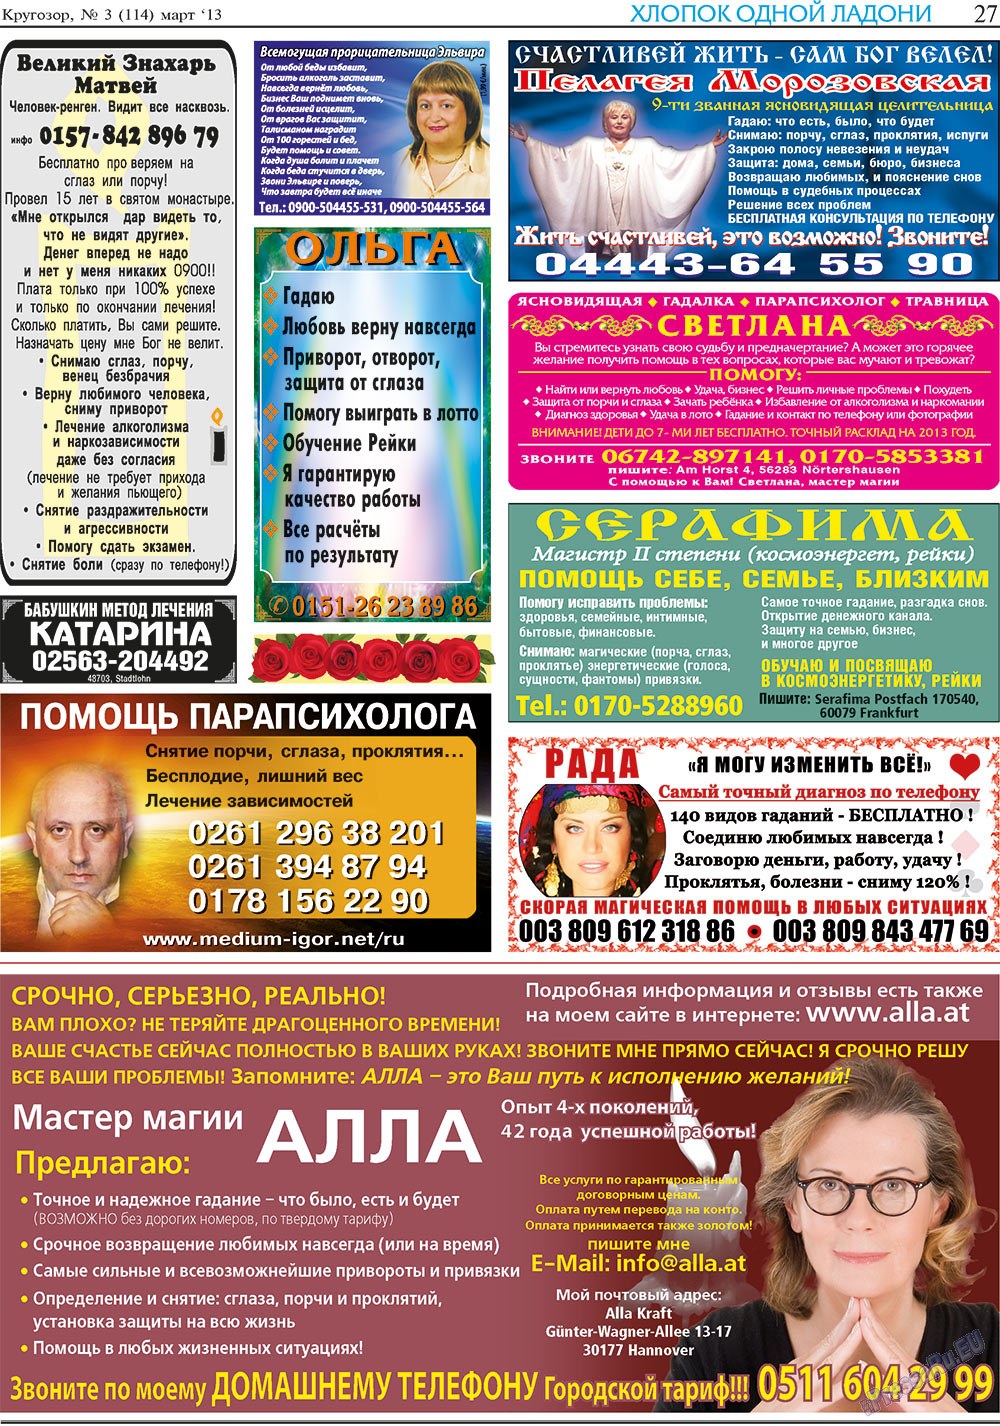 Кругозор, газета. 2013 №3 стр.27